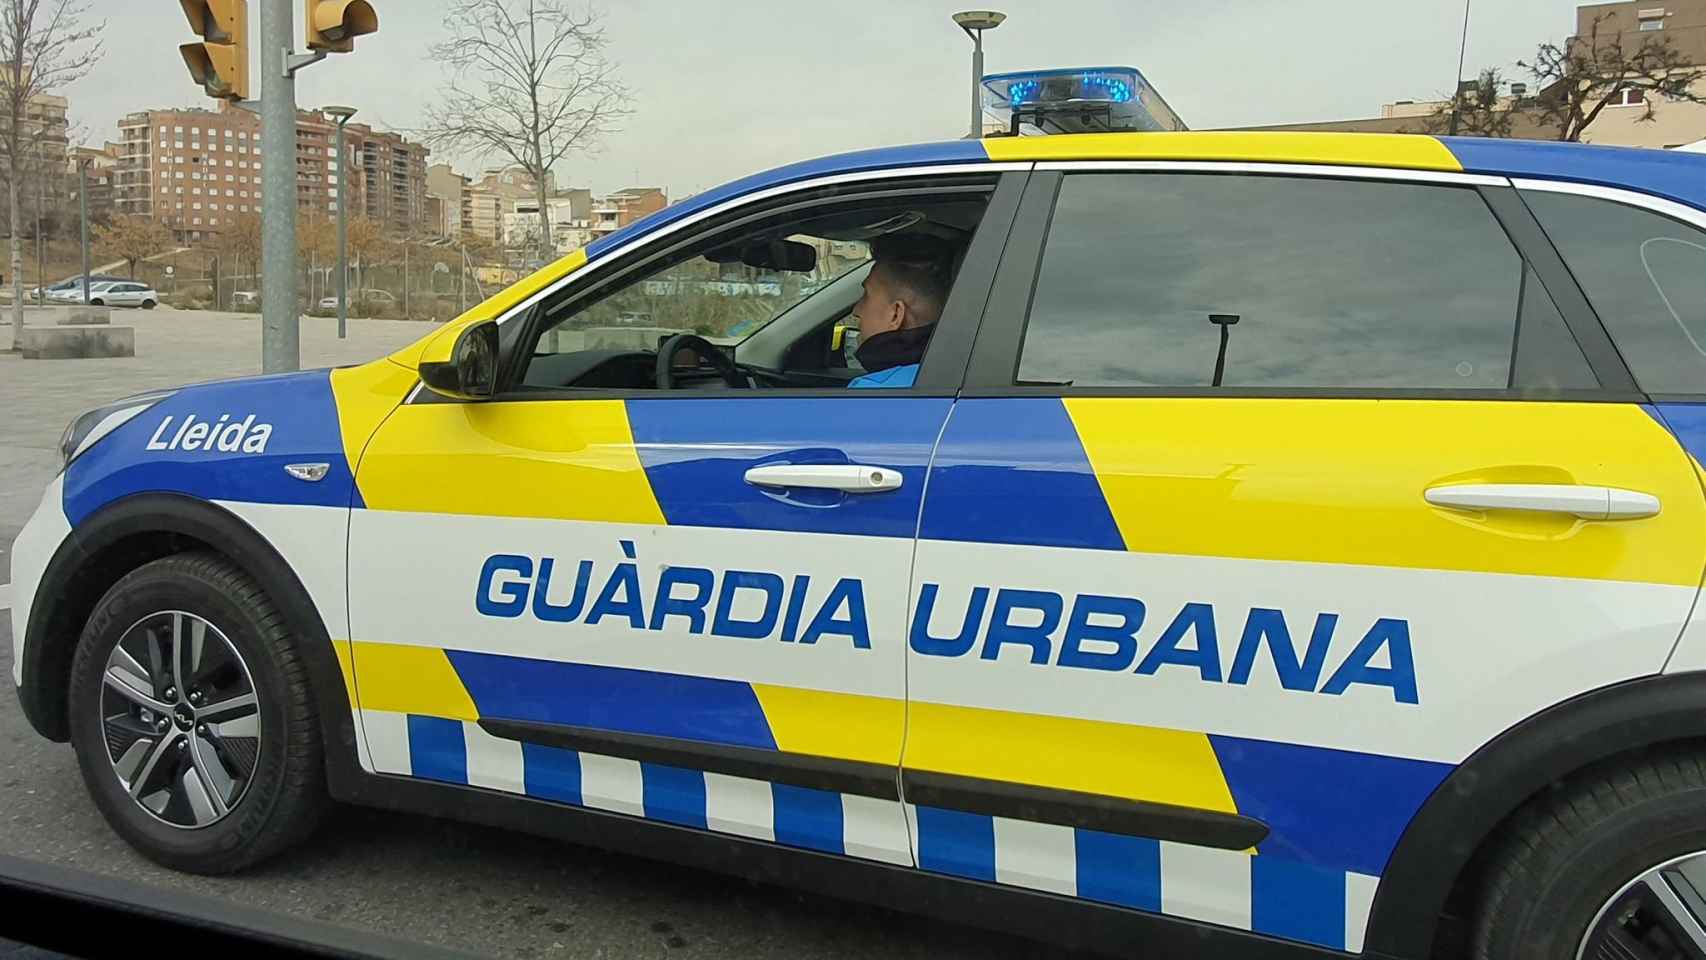 Coche de la Guardia Urbana de Lleida / GUARDIA URBANA DE LLEIDA